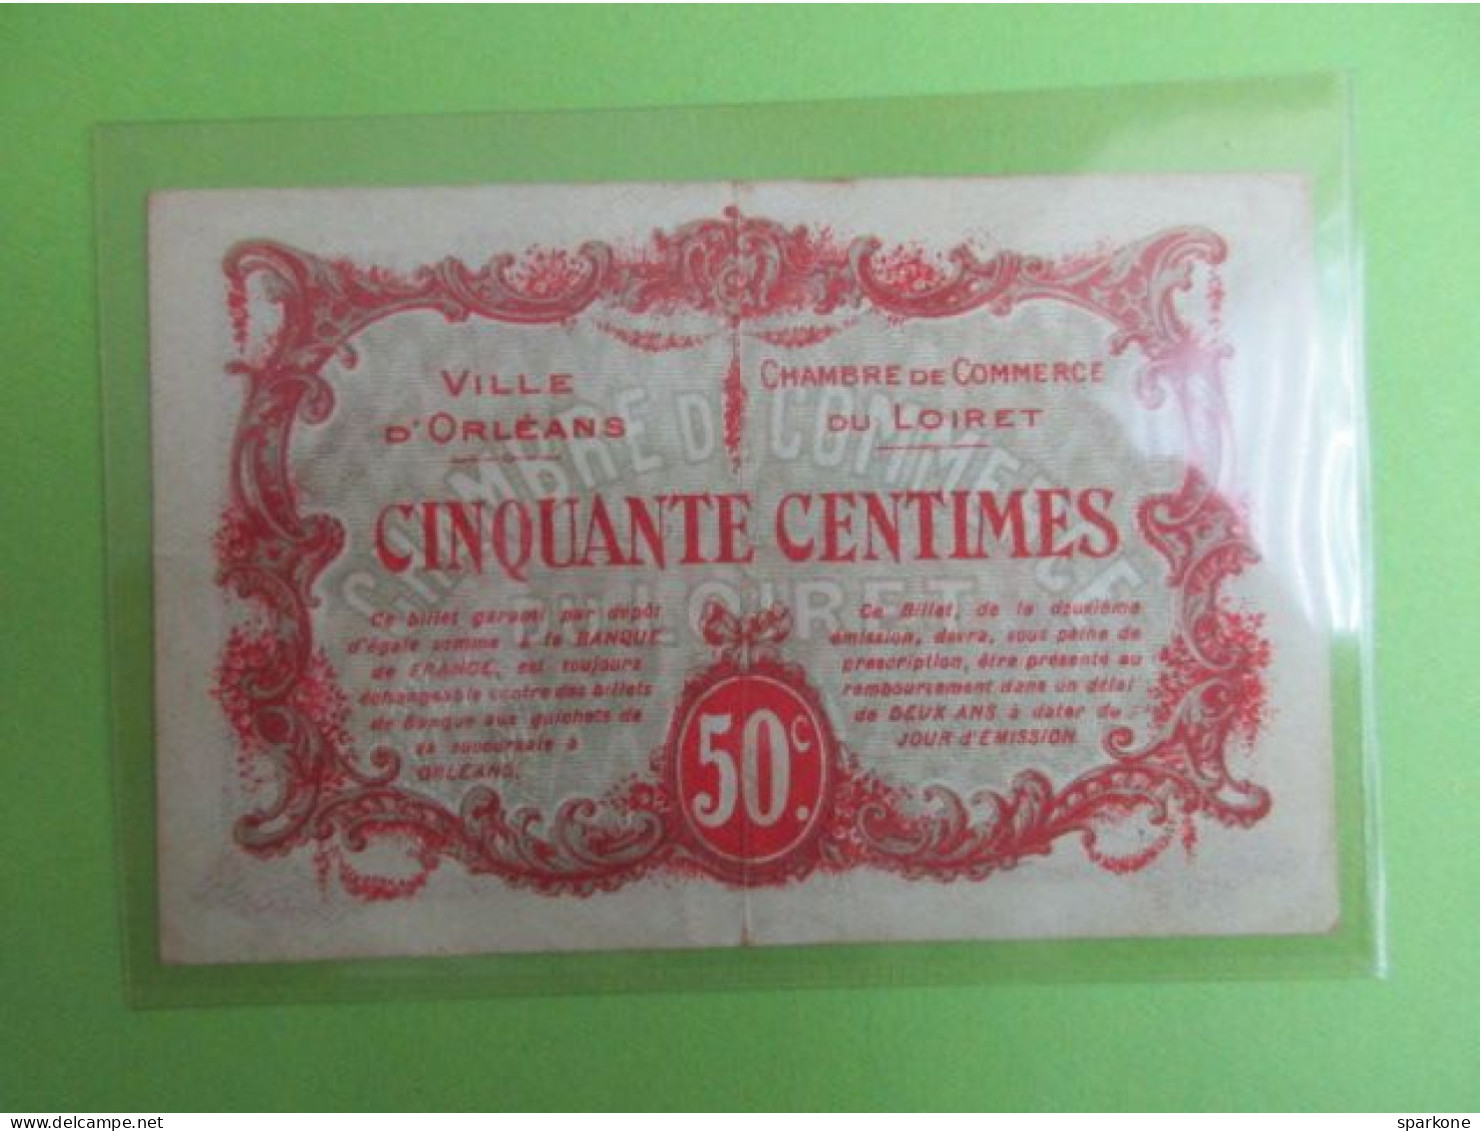 Chambre De Commerce Et Ville D'Orléans - Billet De 50 Centimes - 2° émission - 2 Avril 1916 - Cámara De Comercio